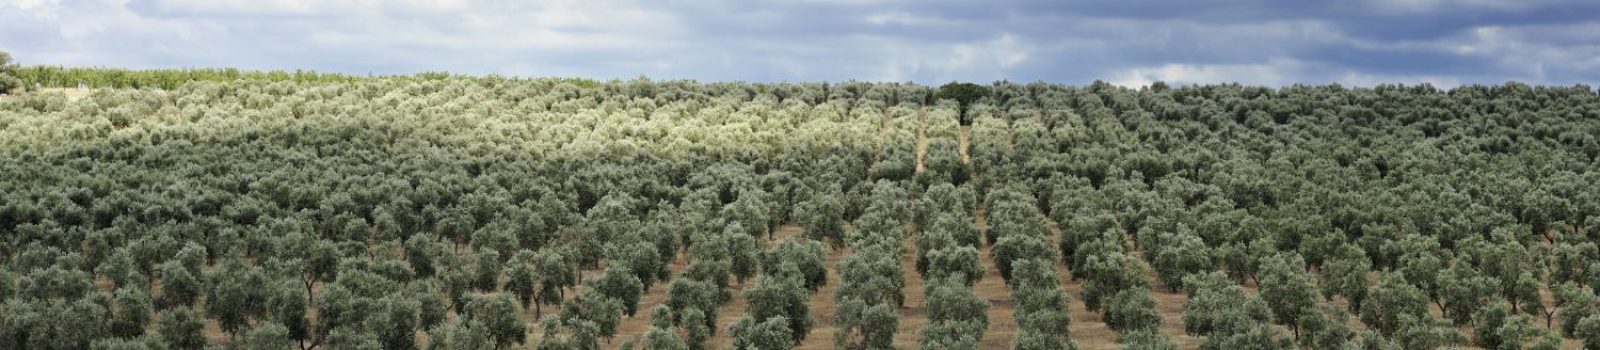 ¿Cuáles son los cultivos más rentables en España? - AGR Global